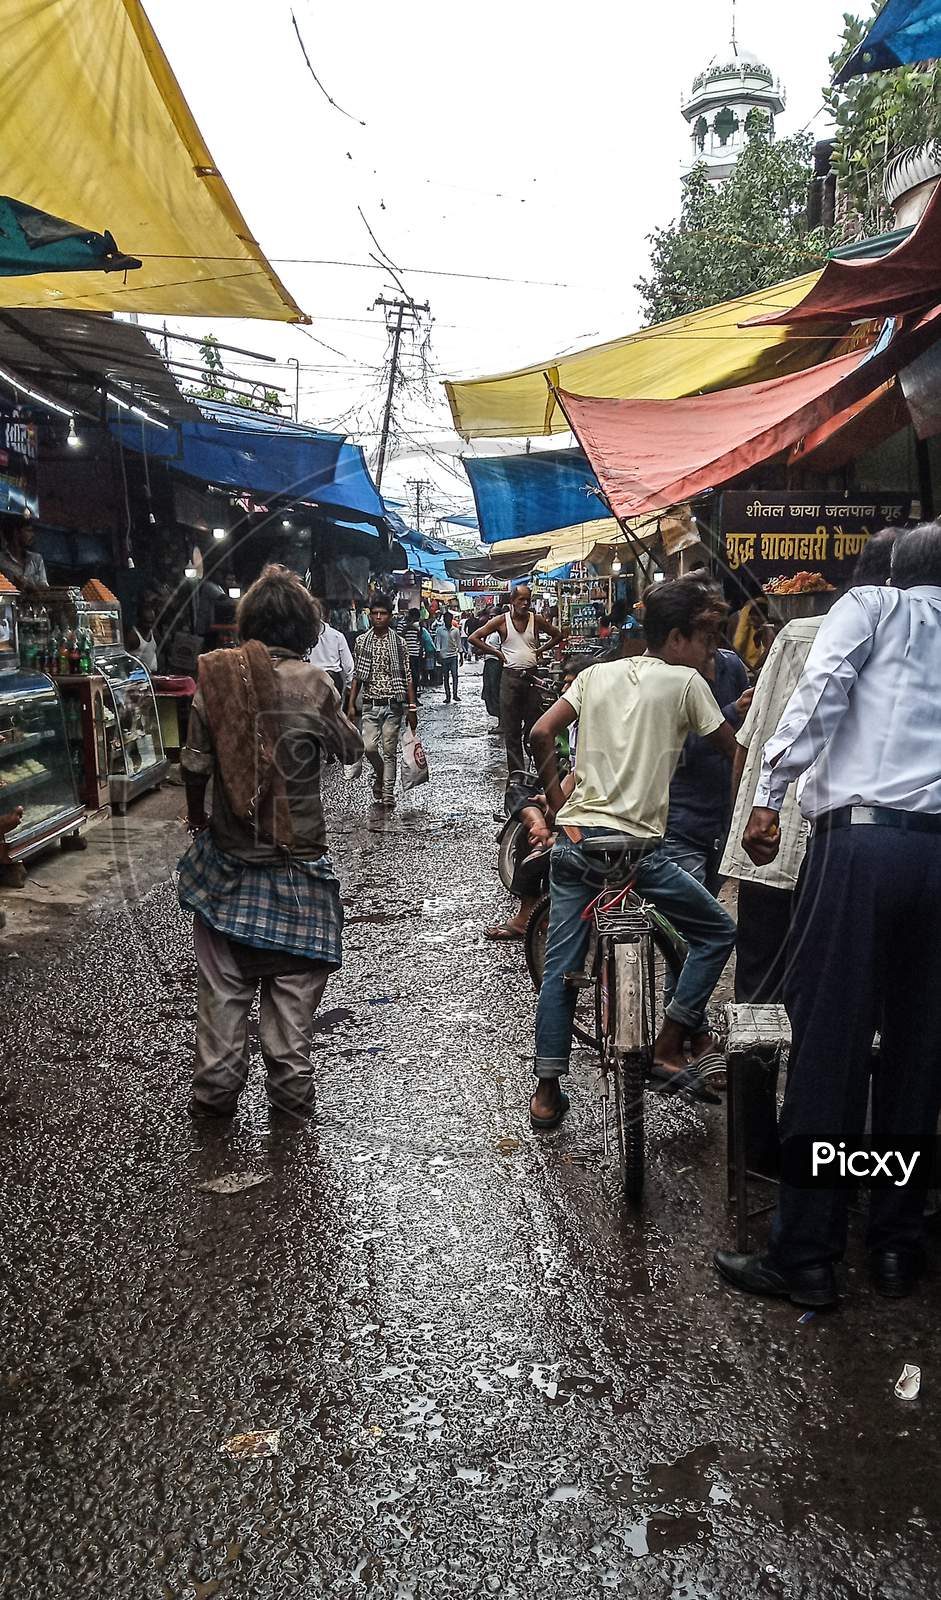 Street market after rain